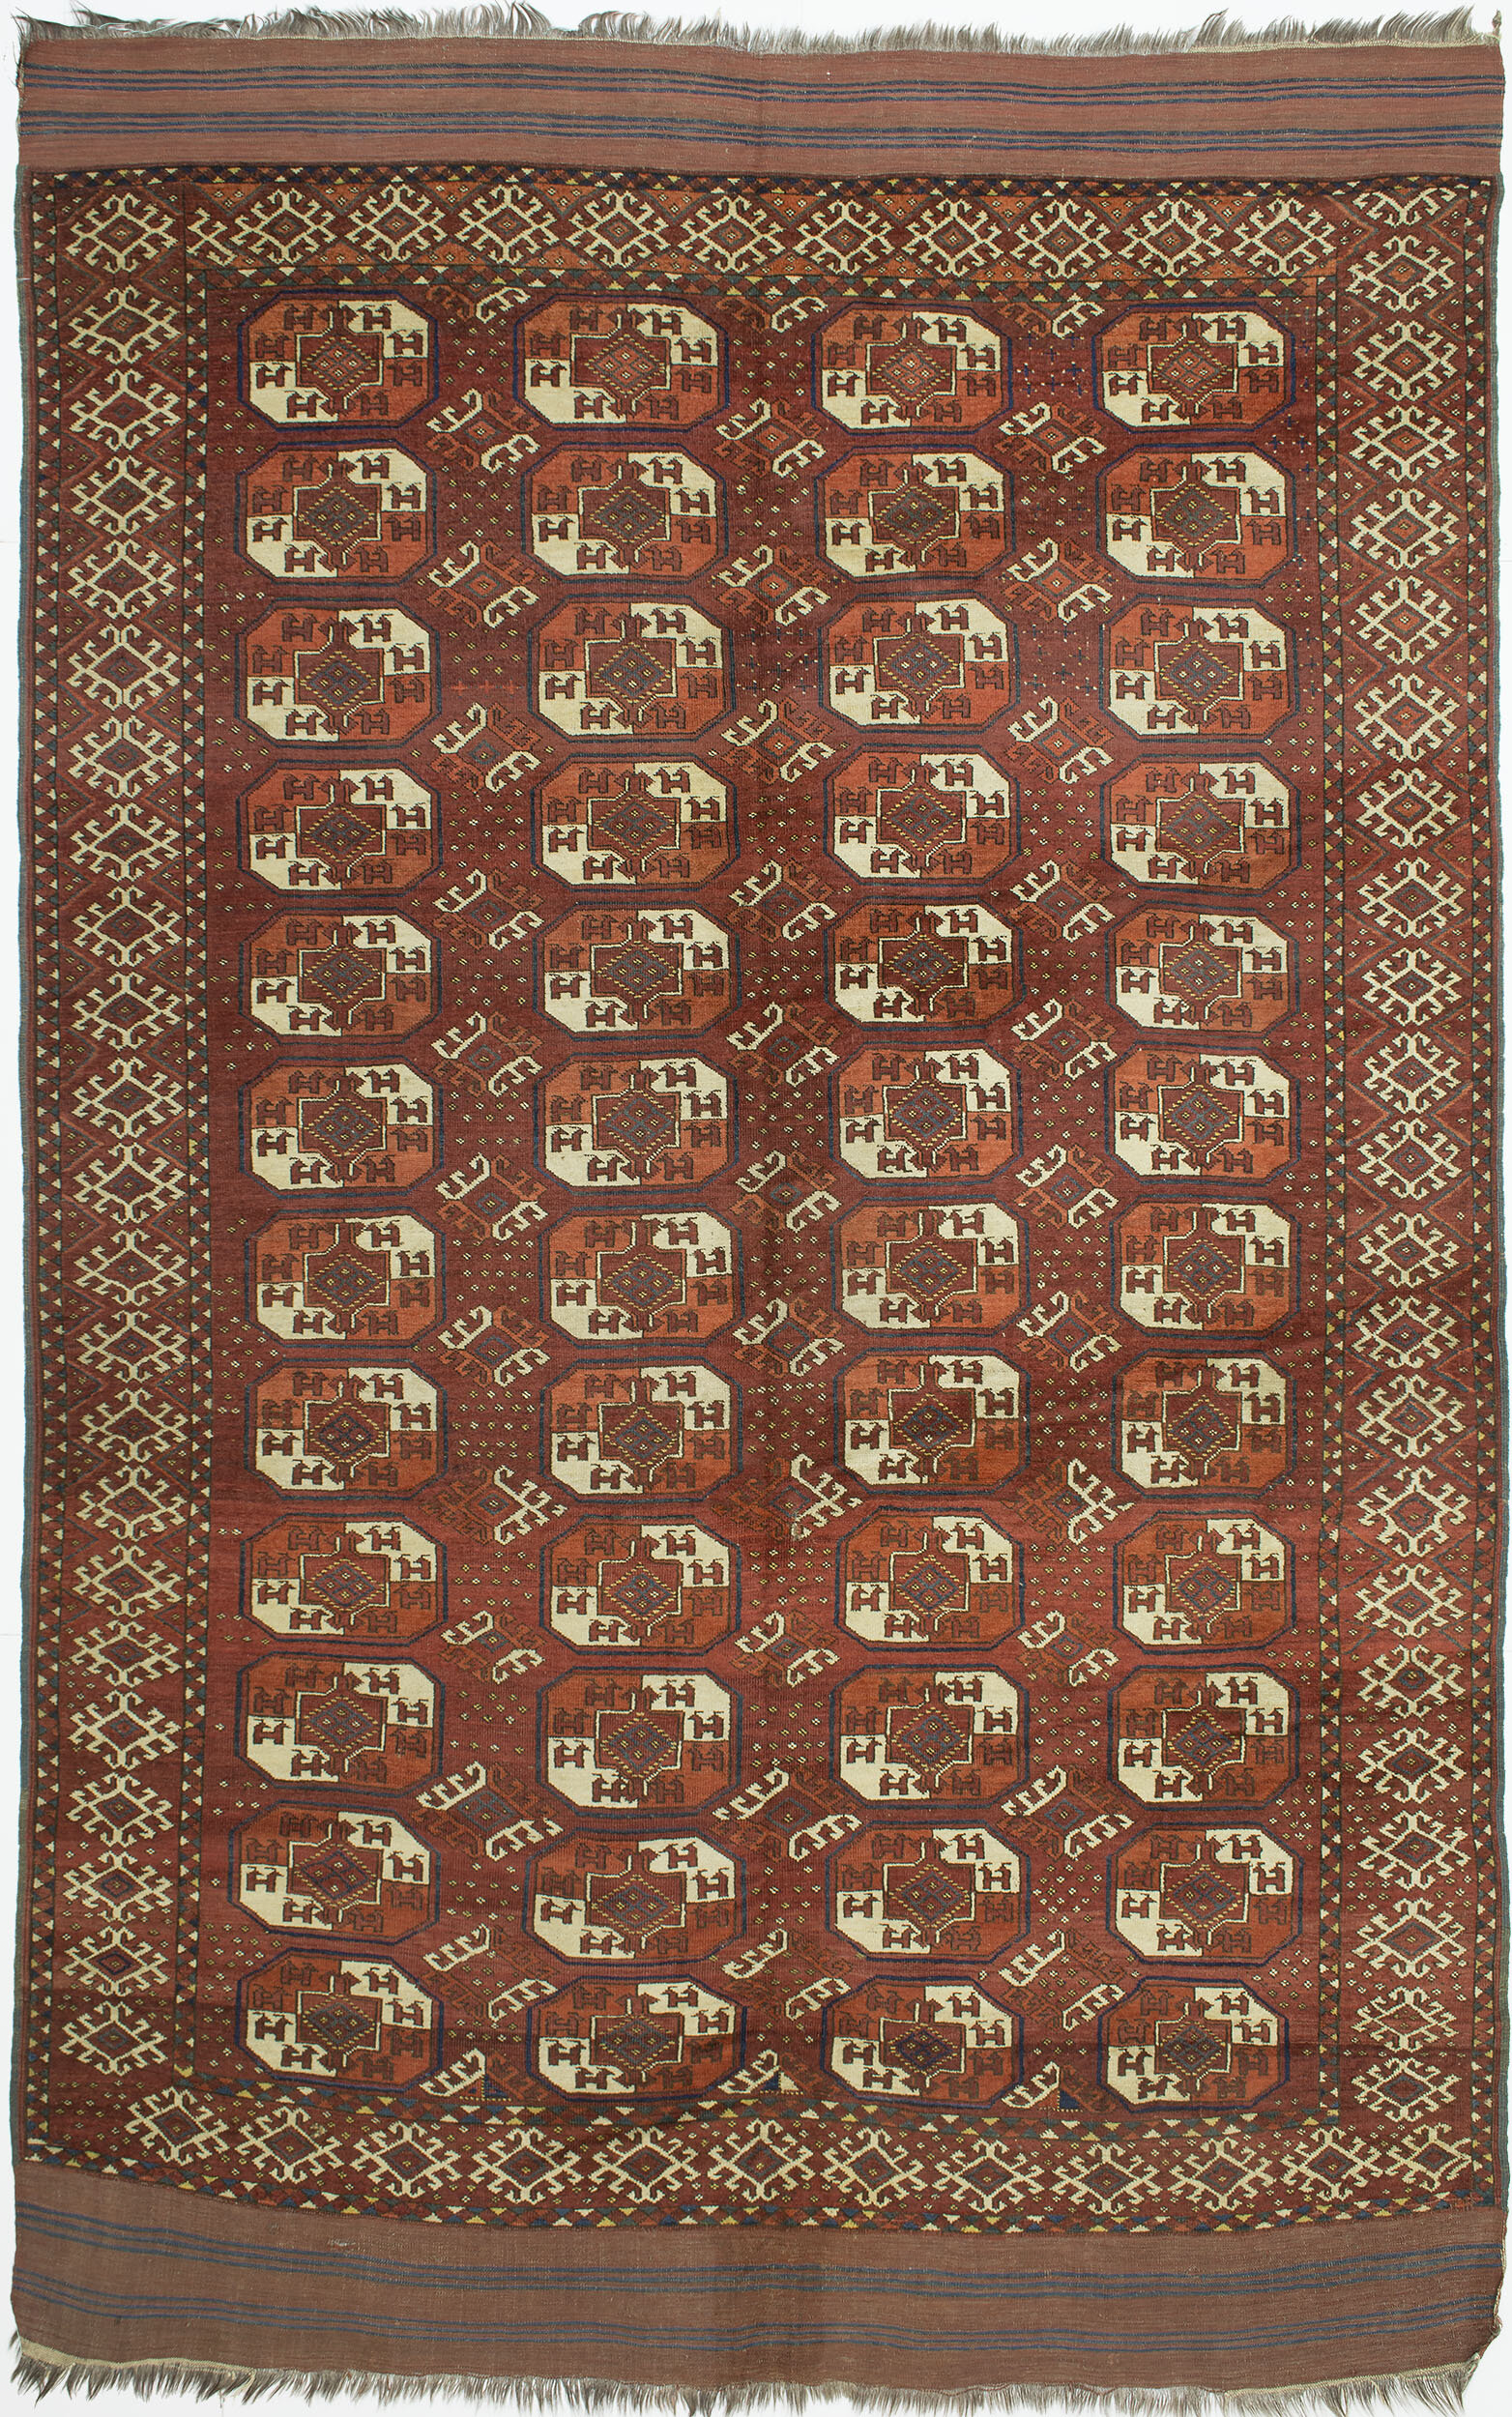 Kizil Ayak Carpet 10' 9" x 6' 8" 